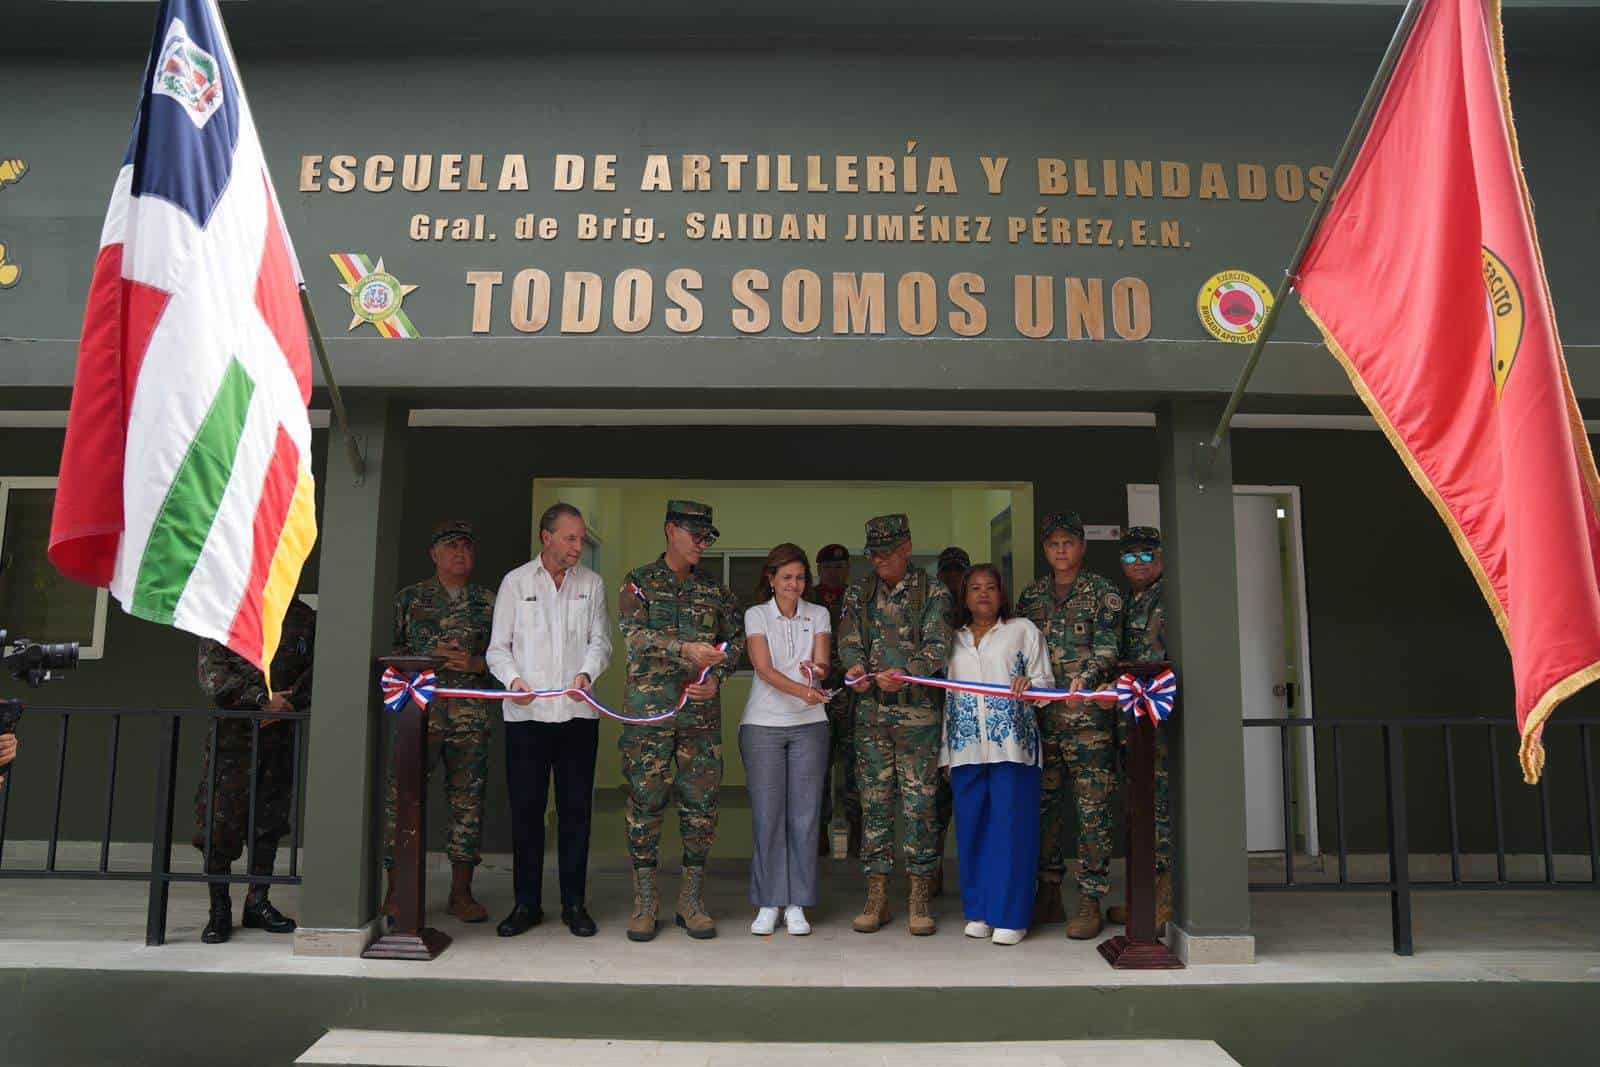 Corte de cinta en la inauguración de la Escuela de Artillería y Blindado.